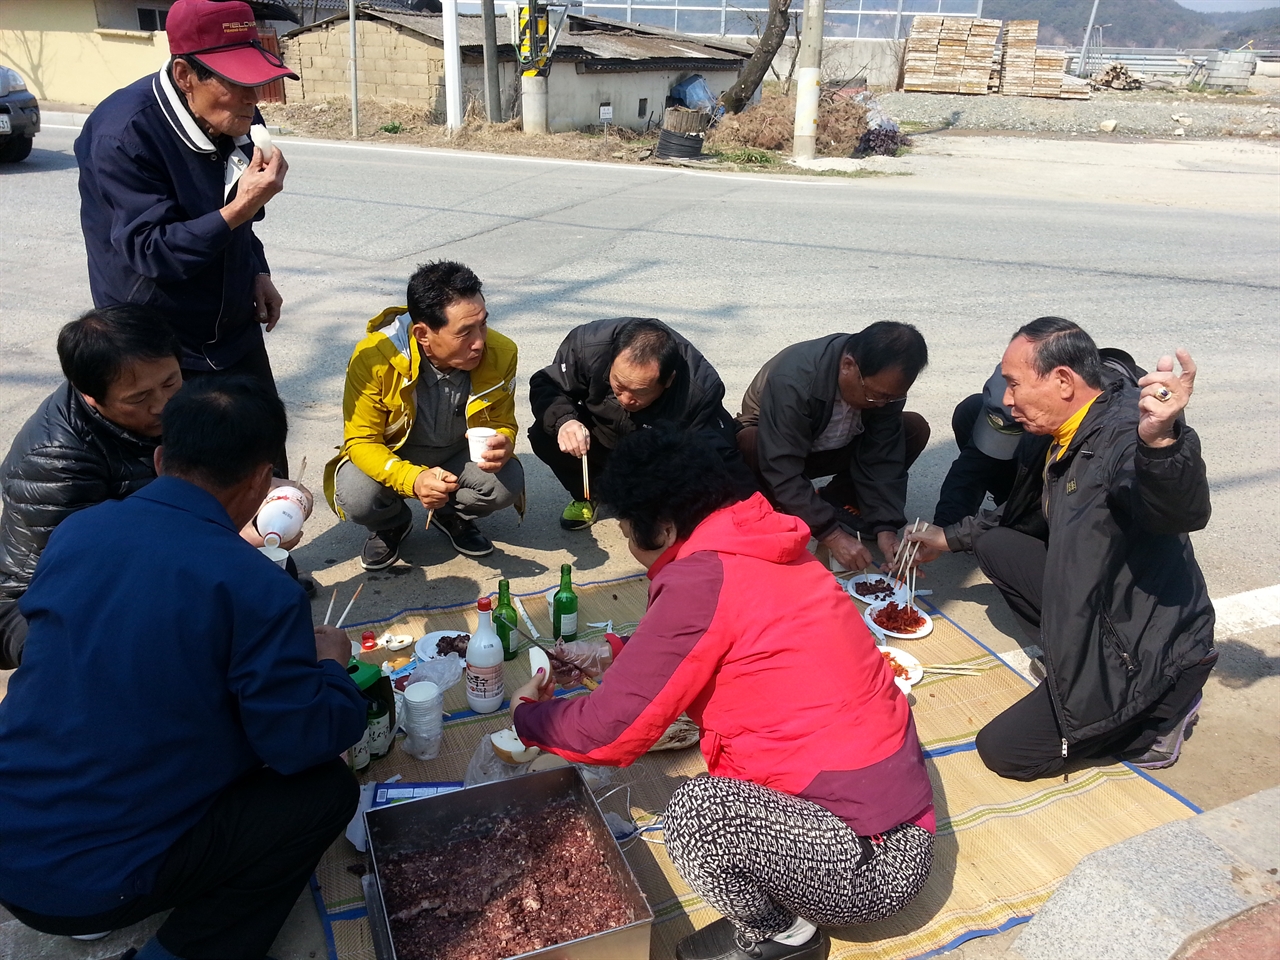 구산동 주민들이 덕담을 주고 받으며 음식을 나누고 있다.